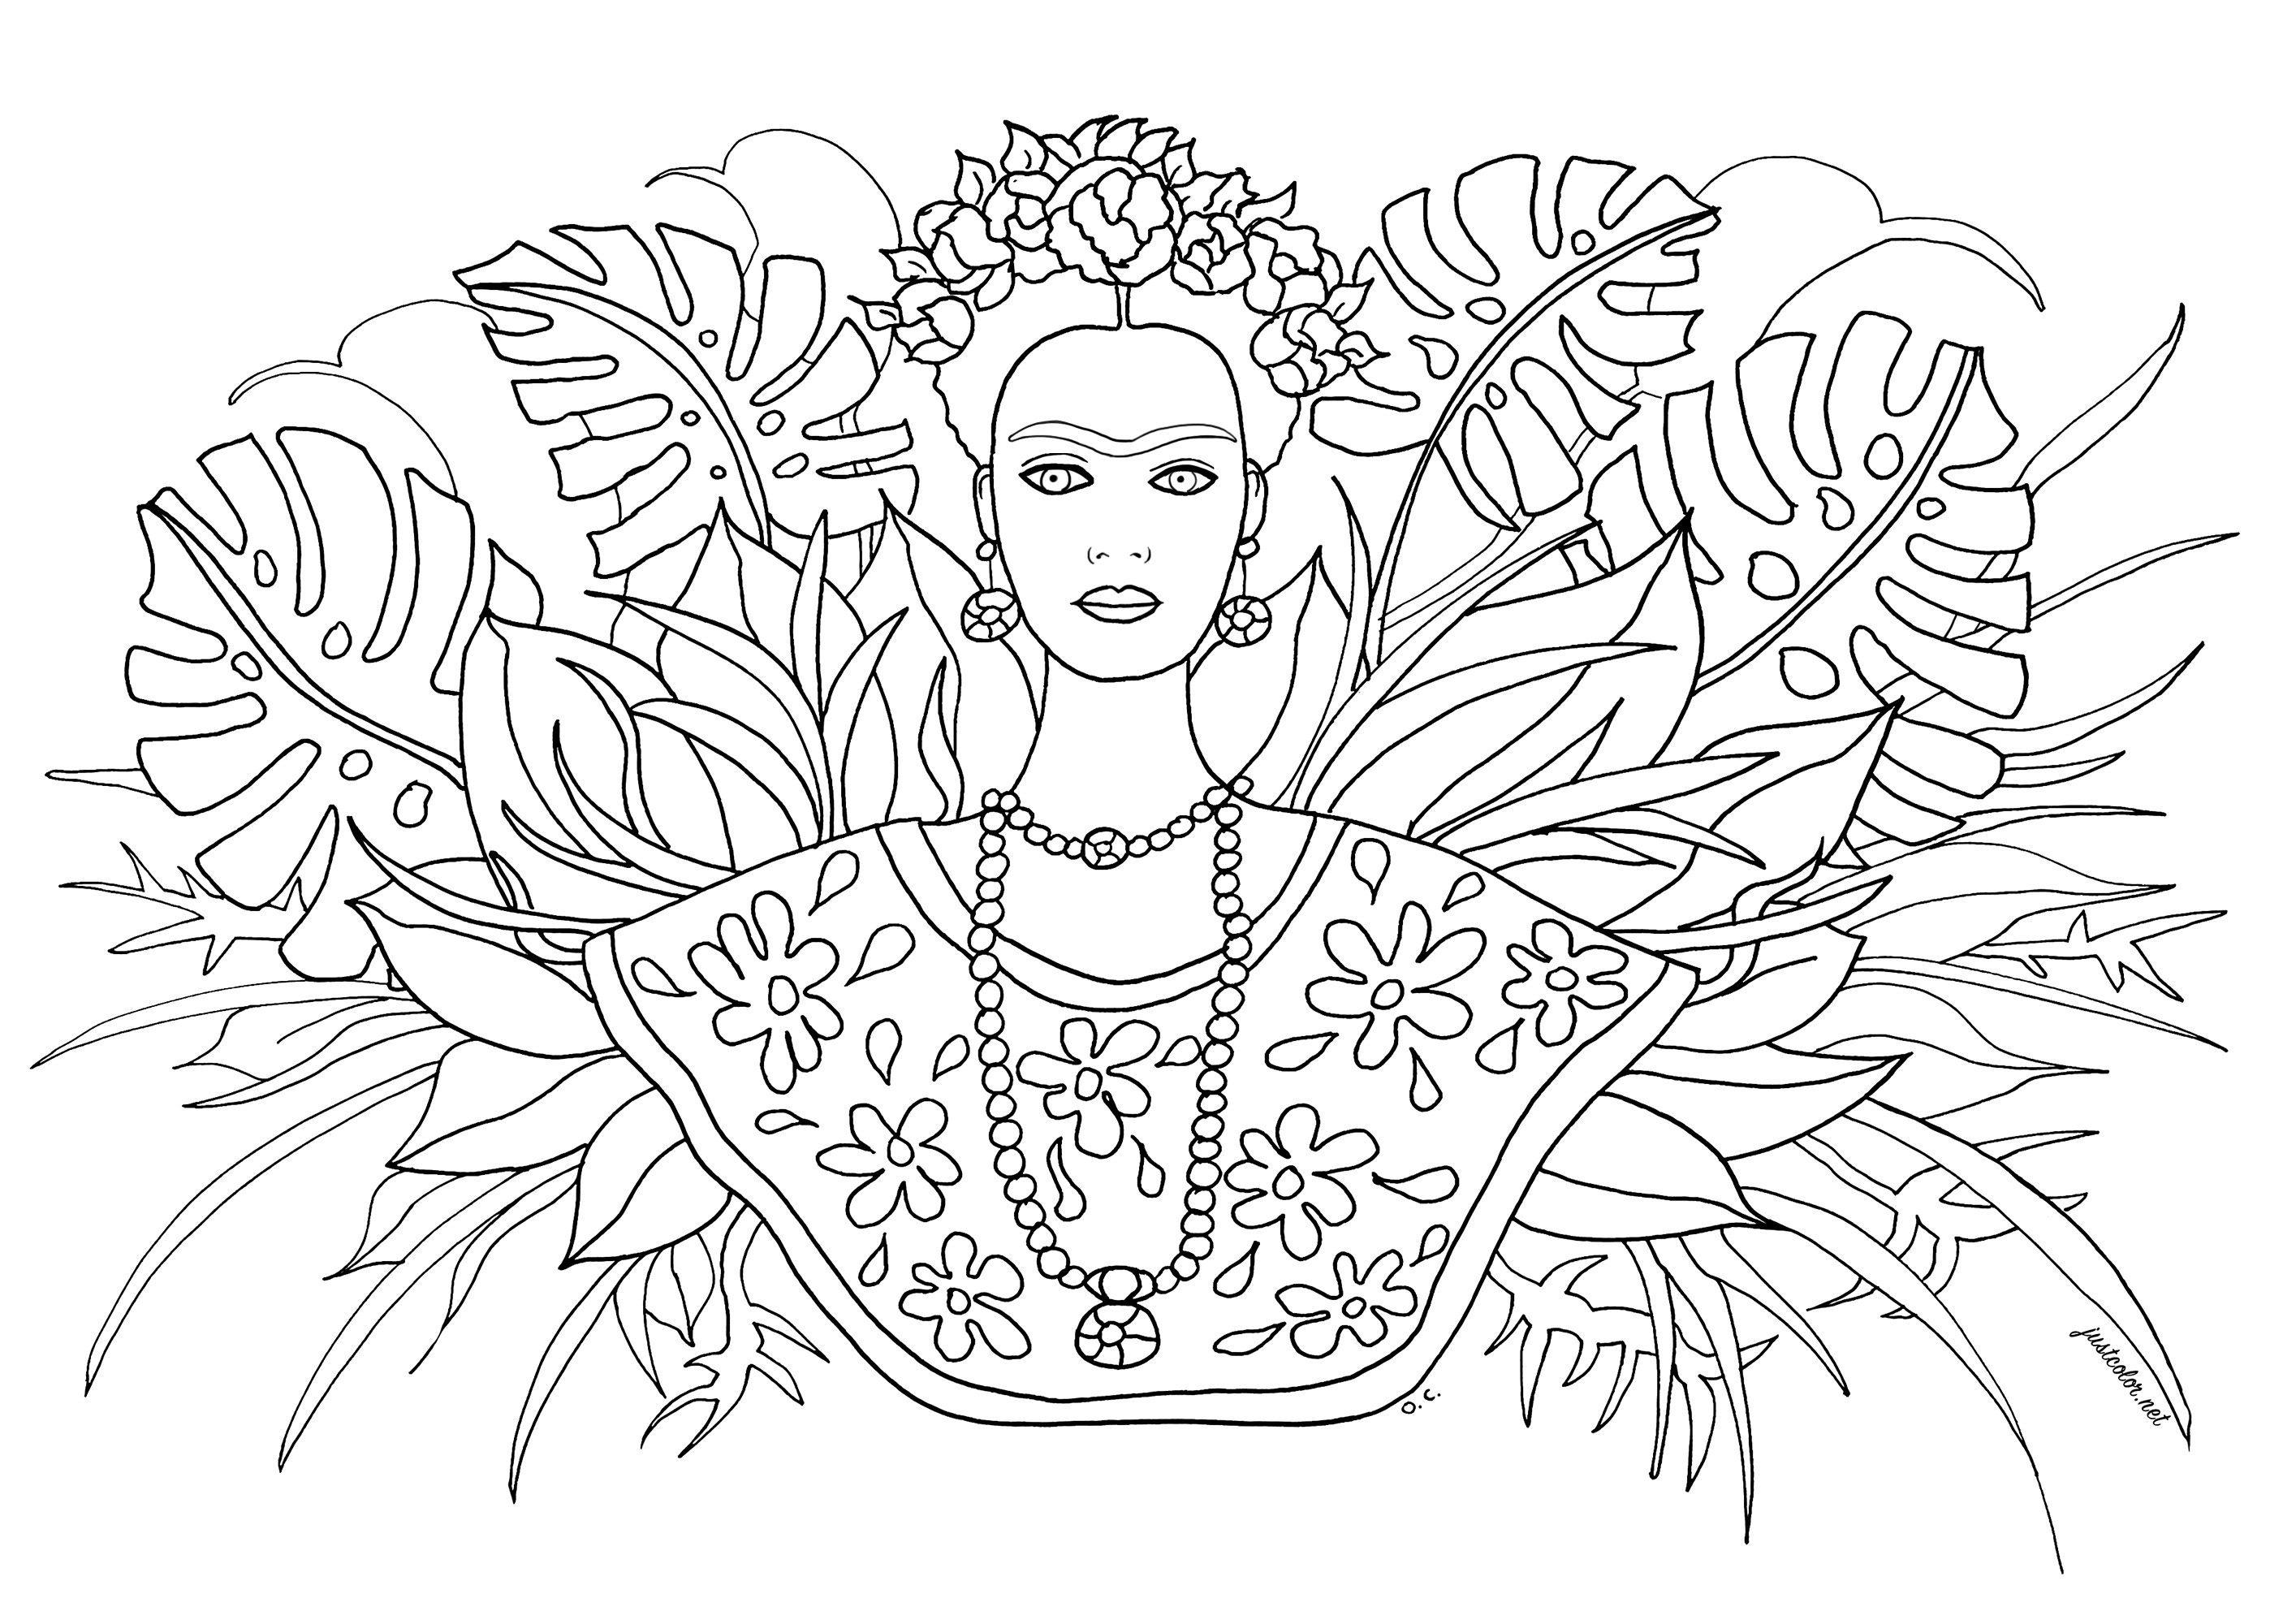 La pittrice messicana Frida Kahlo e vari tipi di foglie sullo sfondo. Lo sapevate? Nel corso della sua carriera, Frida Kahlo ha realizzato 143 dipinti, tra cui 55 autoritratti. Kahlo ha dichiarato: 'Dipingo me stessa perché sono spesso sola e perché sono il soggetto che conosco meglio'. I suoi autoritratti includono spesso interpretazioni di ferite fisiche e psicologiche.